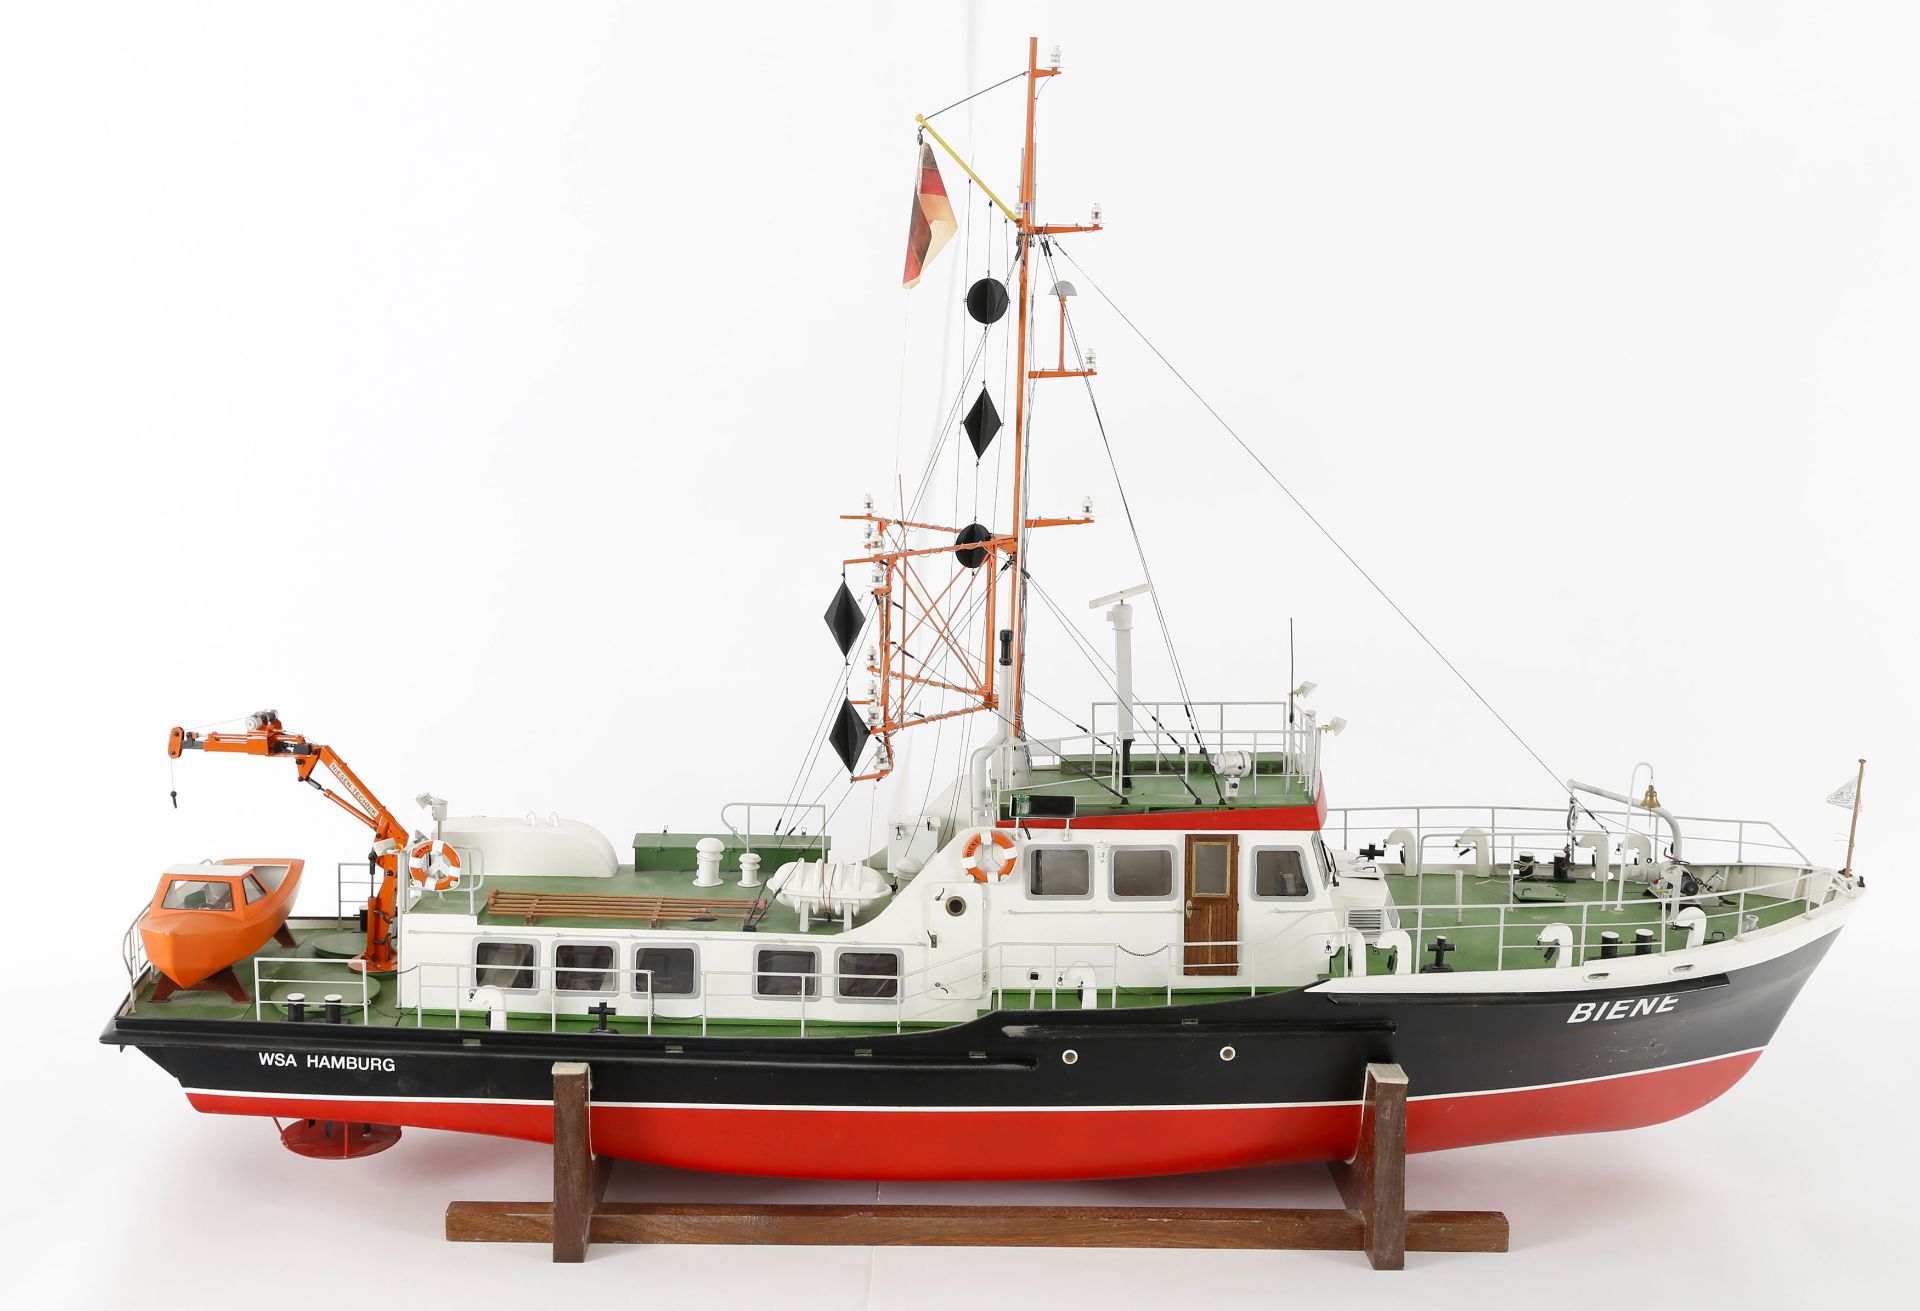 Modell des Peilschiffs 'Biene' - Image 7 of 7